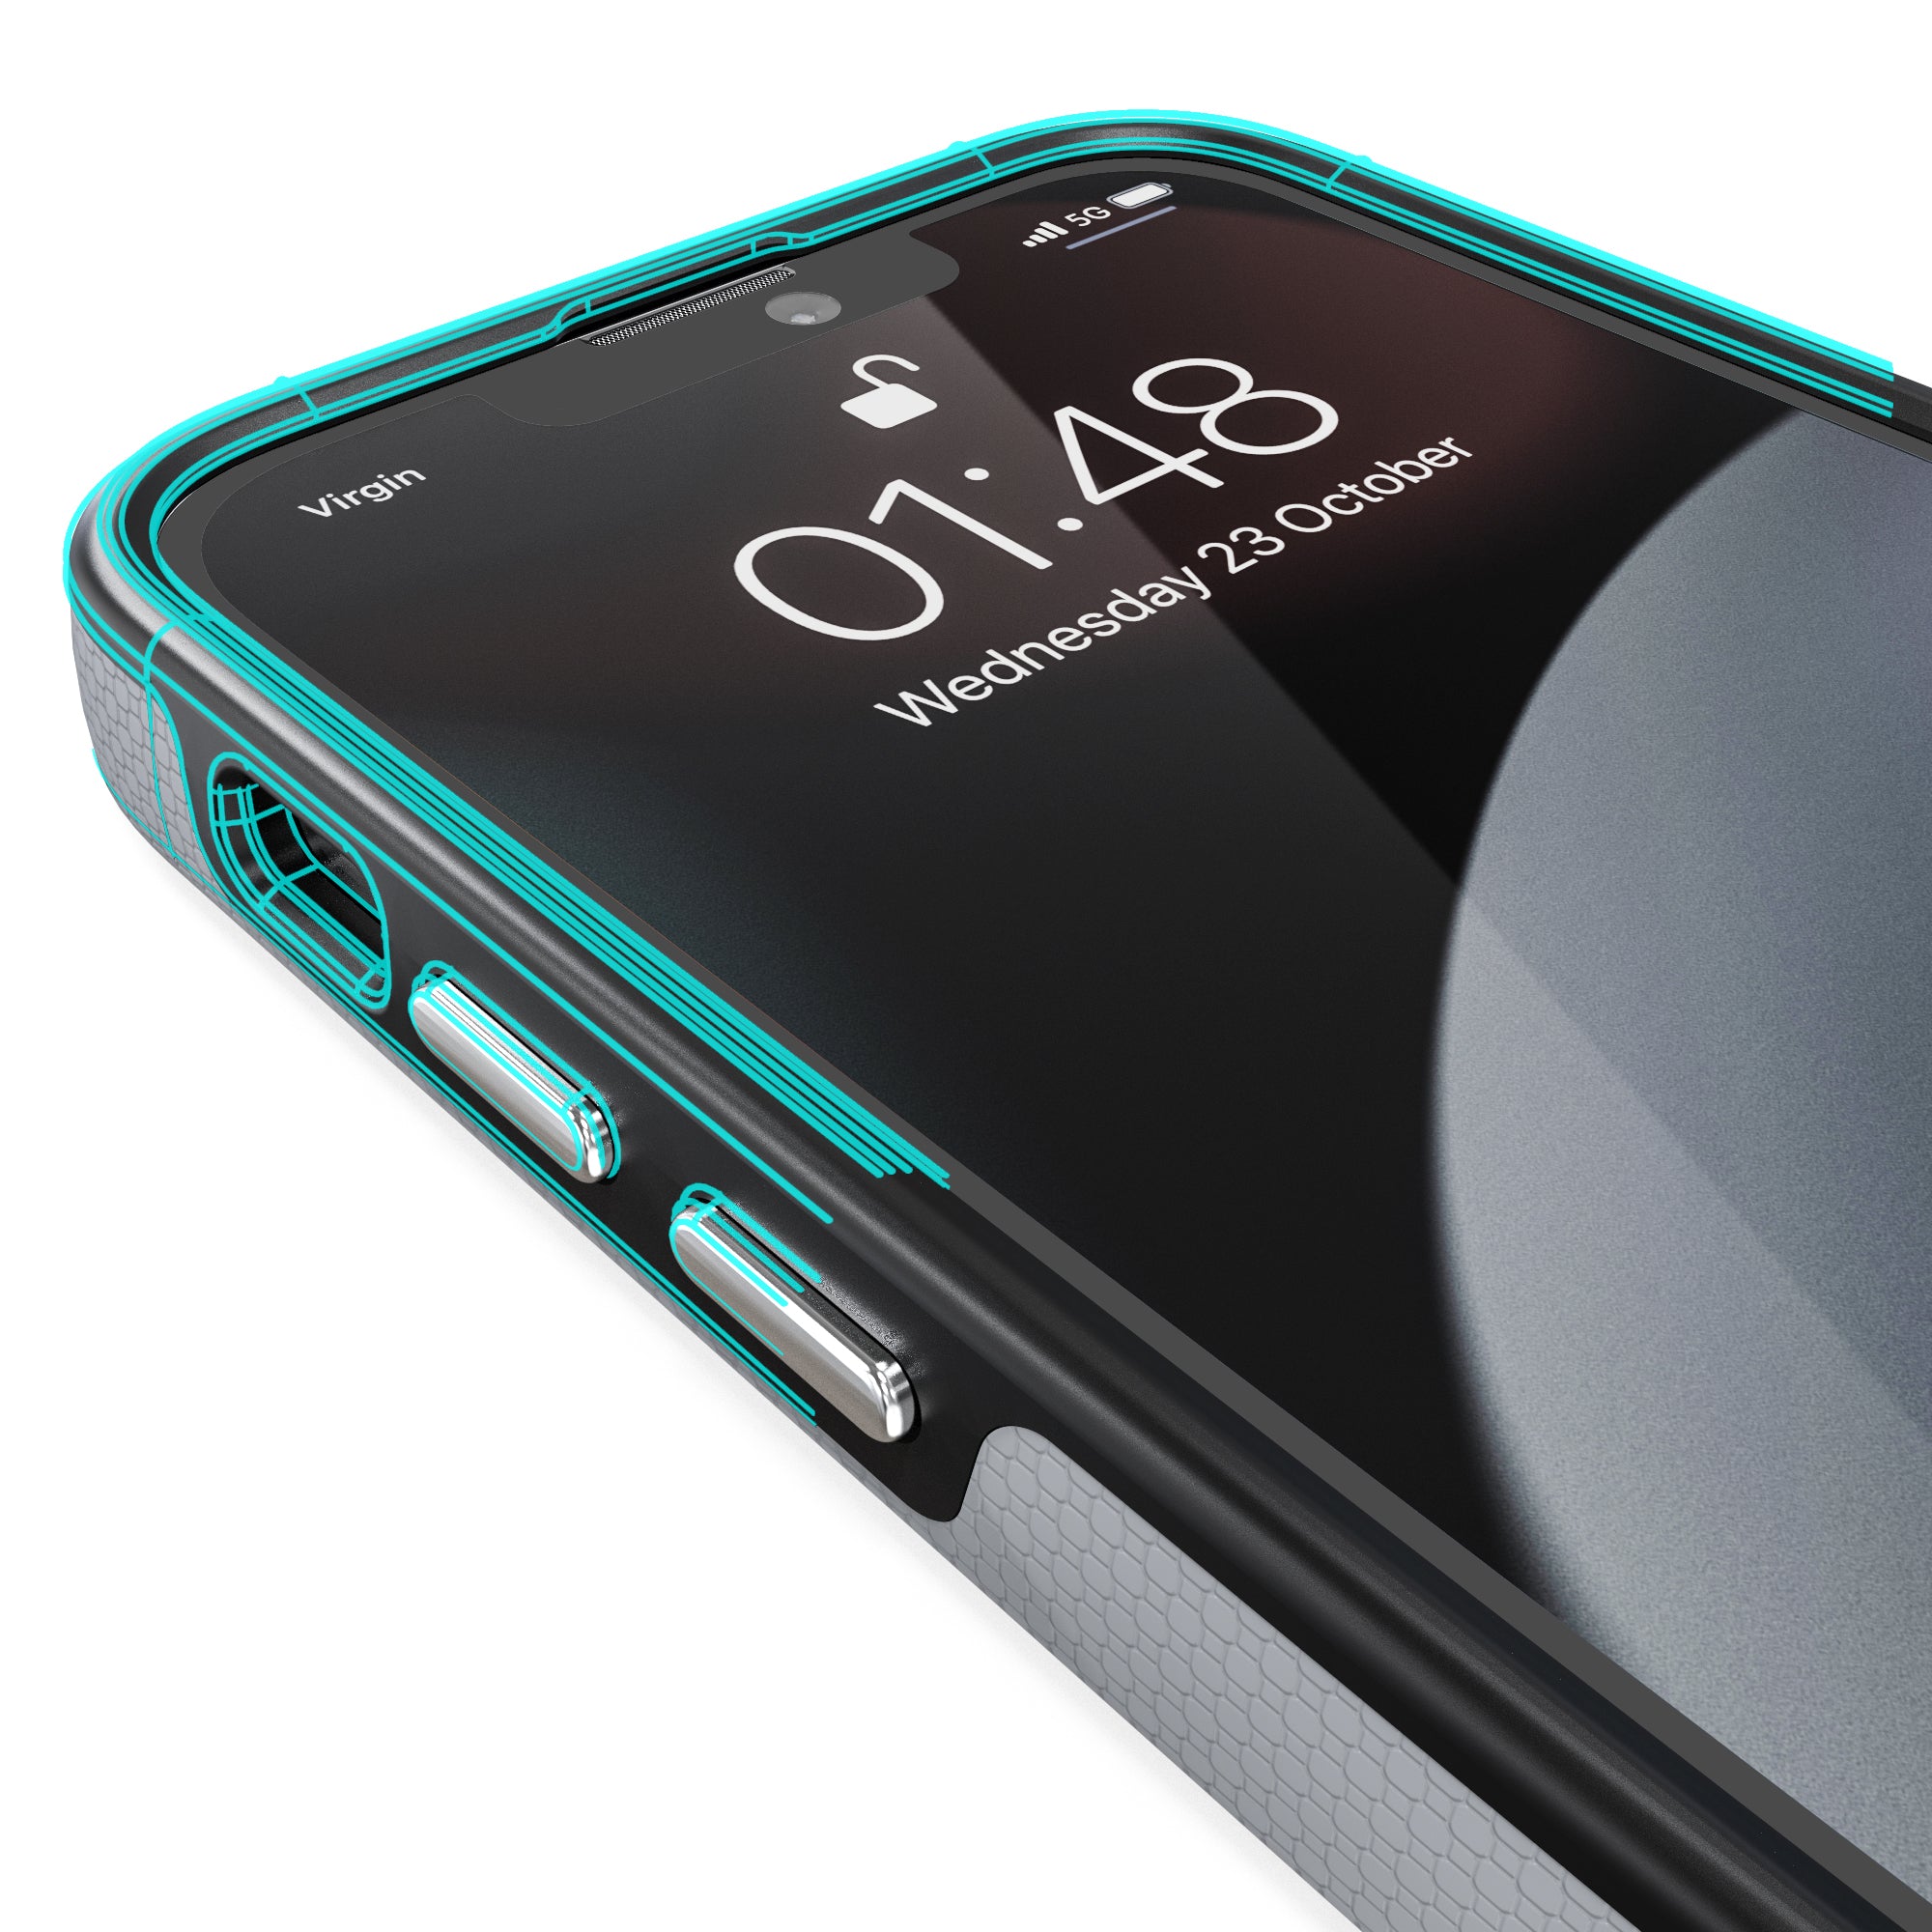 iPhone 13 mini Case Dual Guard